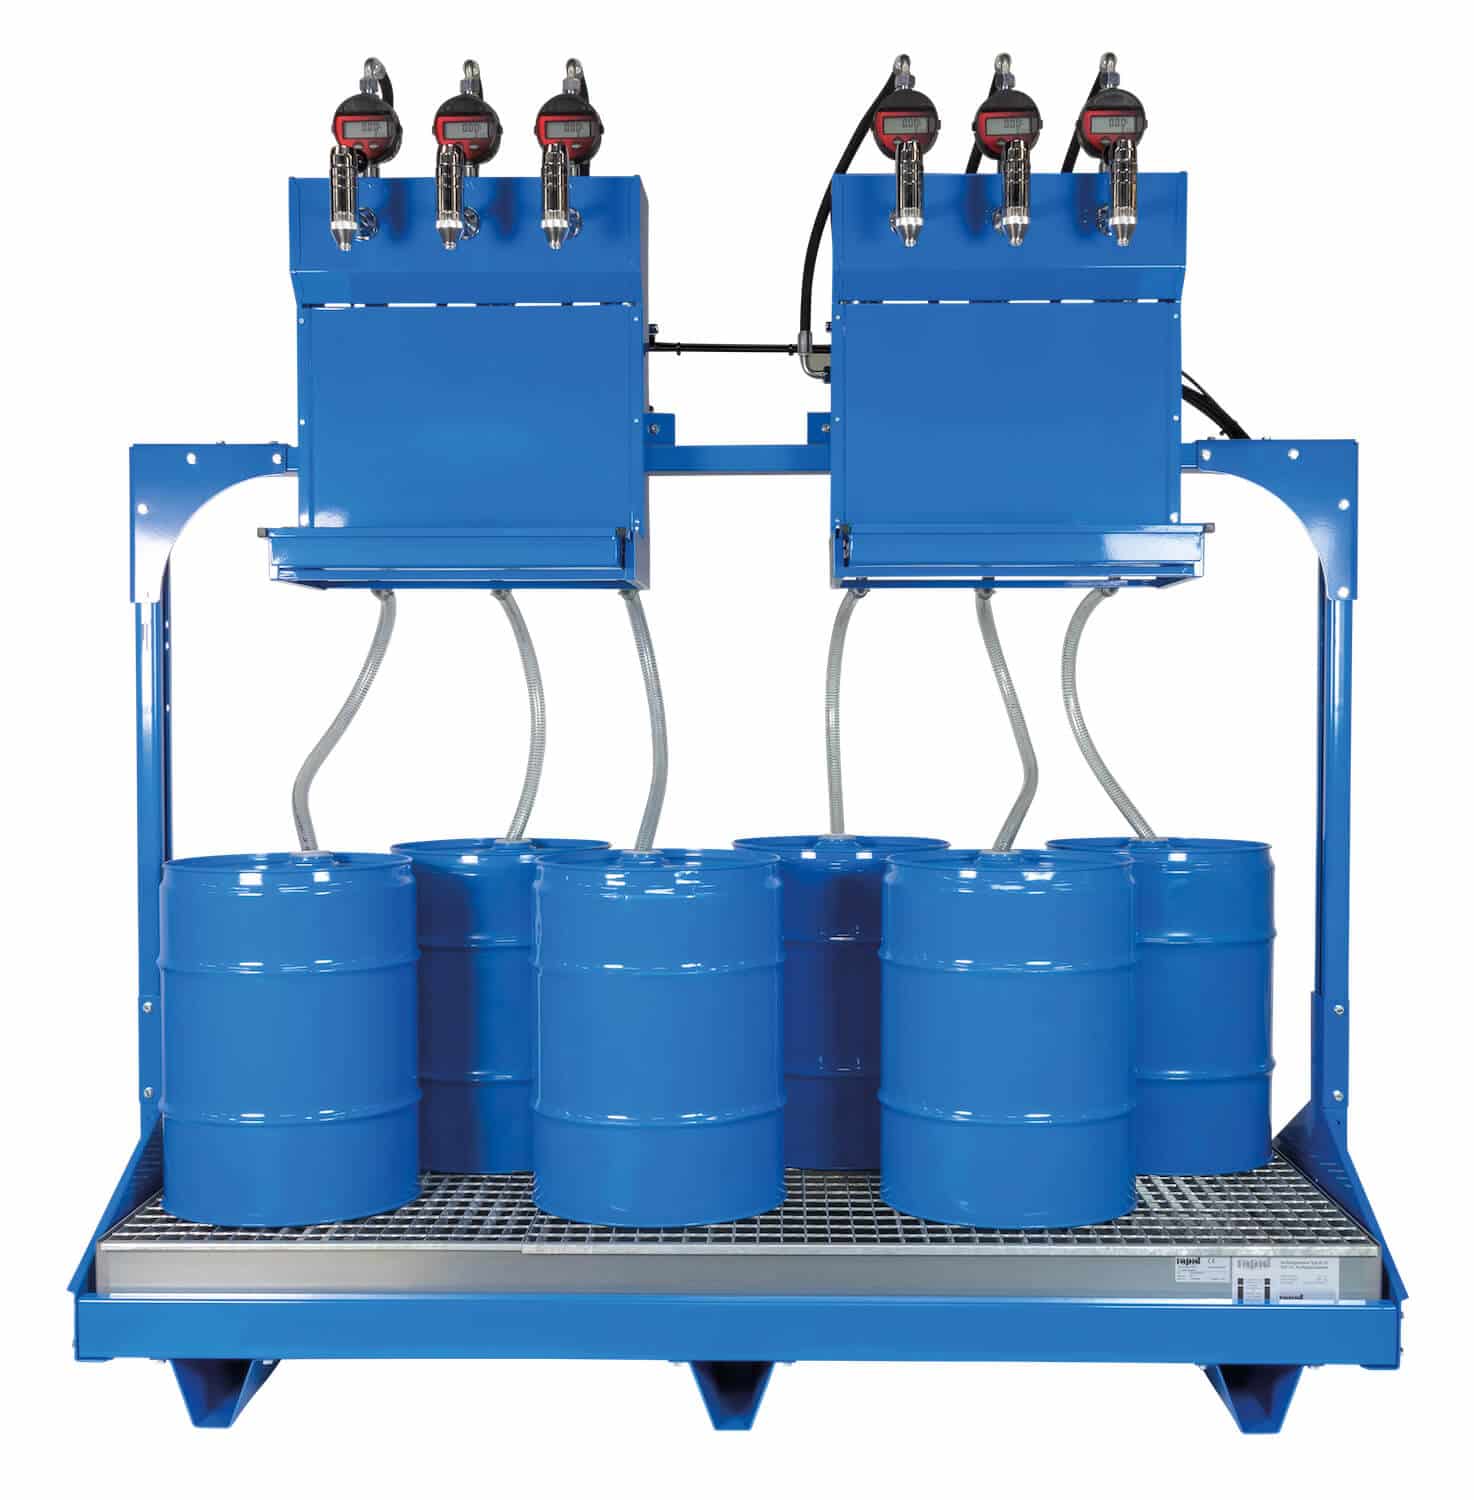 Universell einsetzbares Ölabgabeset für 6x 60 Ltr.-Fässer, mit elektrischen Pumpen